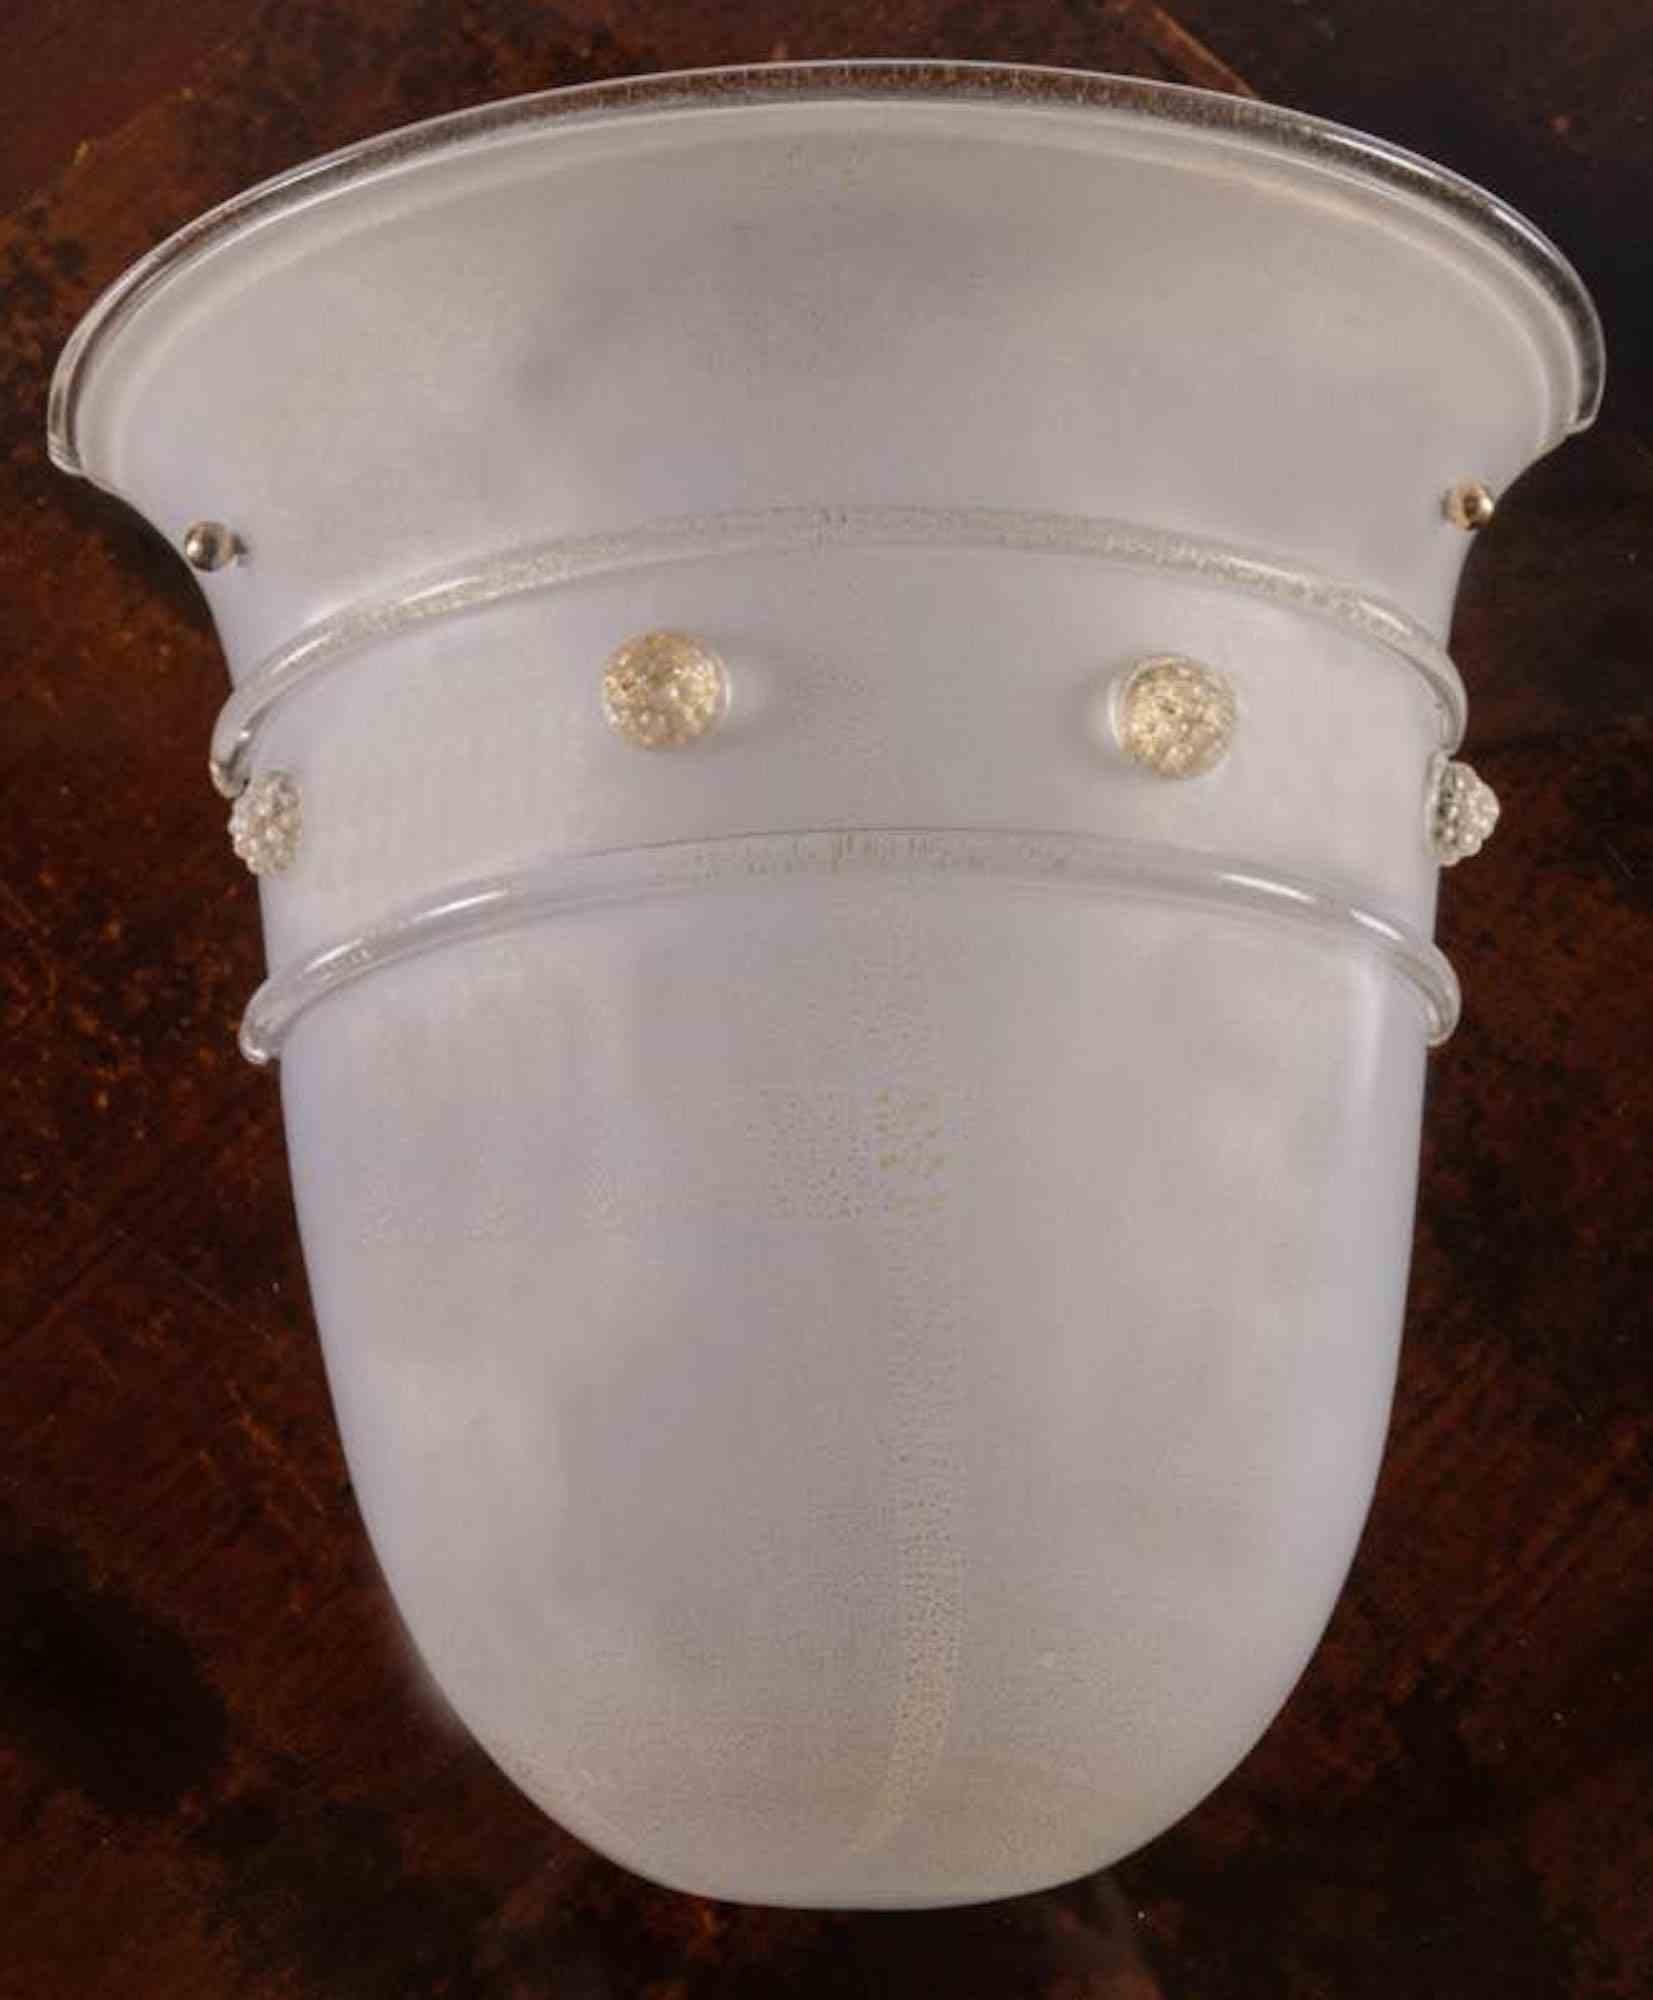 Barovier&Toso, Grande applique à une lumière en verre laiteux blanc, Murano, années 1980.

Inclusions de poussière d'or, décorations en relief appliquées à chaud, porte la marque du fabricant à l'intérieur.

H cm 31x32x15.5 

Bon état.